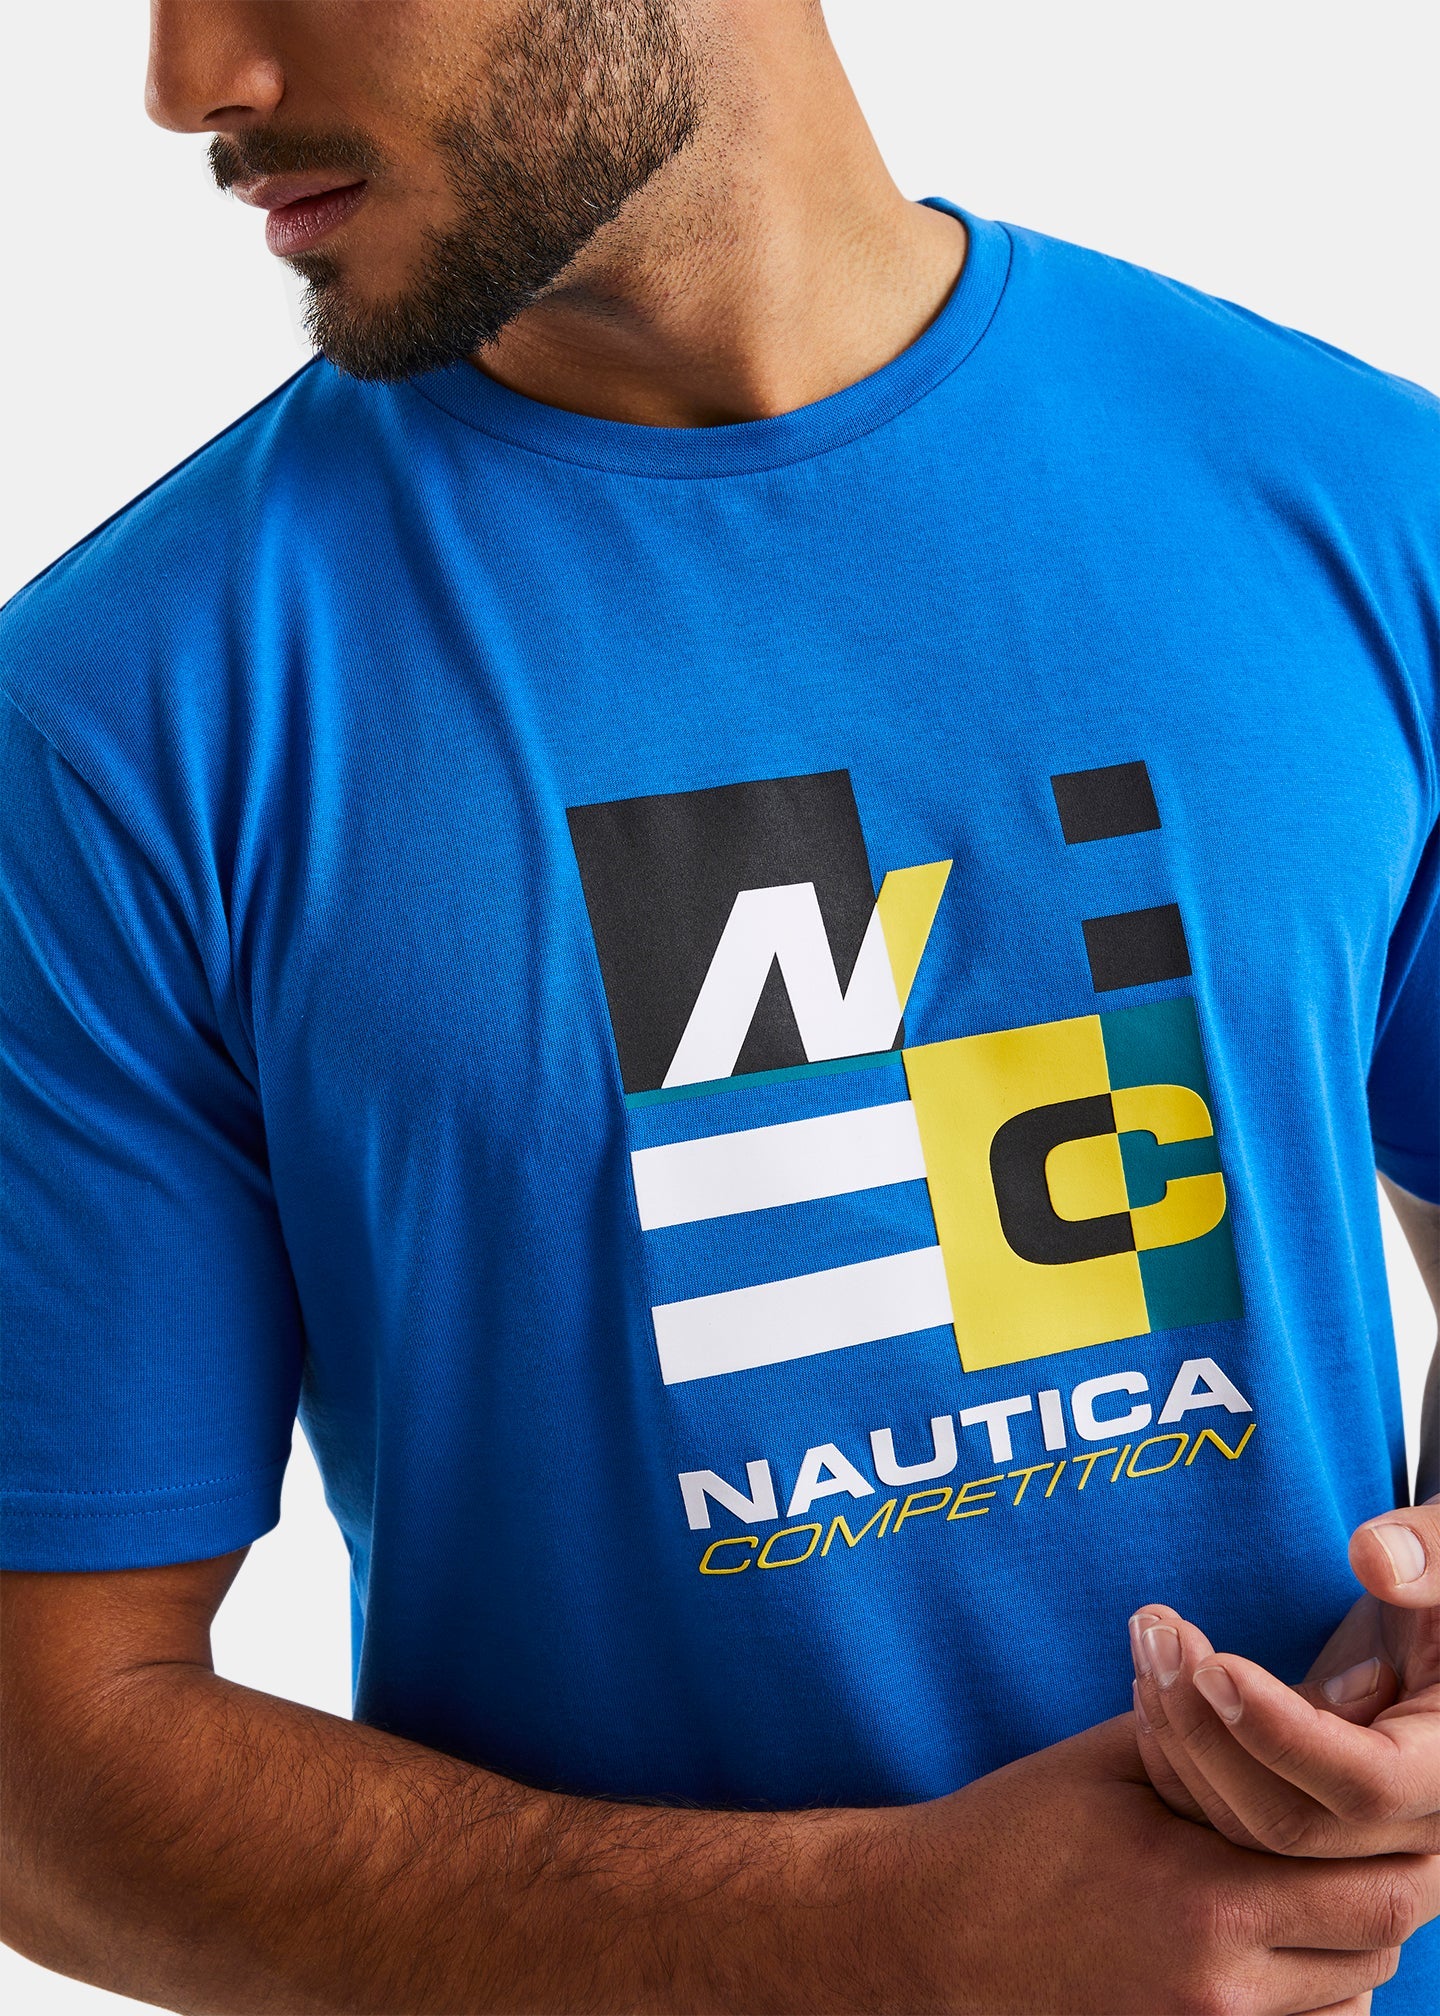 Nautica St Vincent T-Shirt - Royal Blue